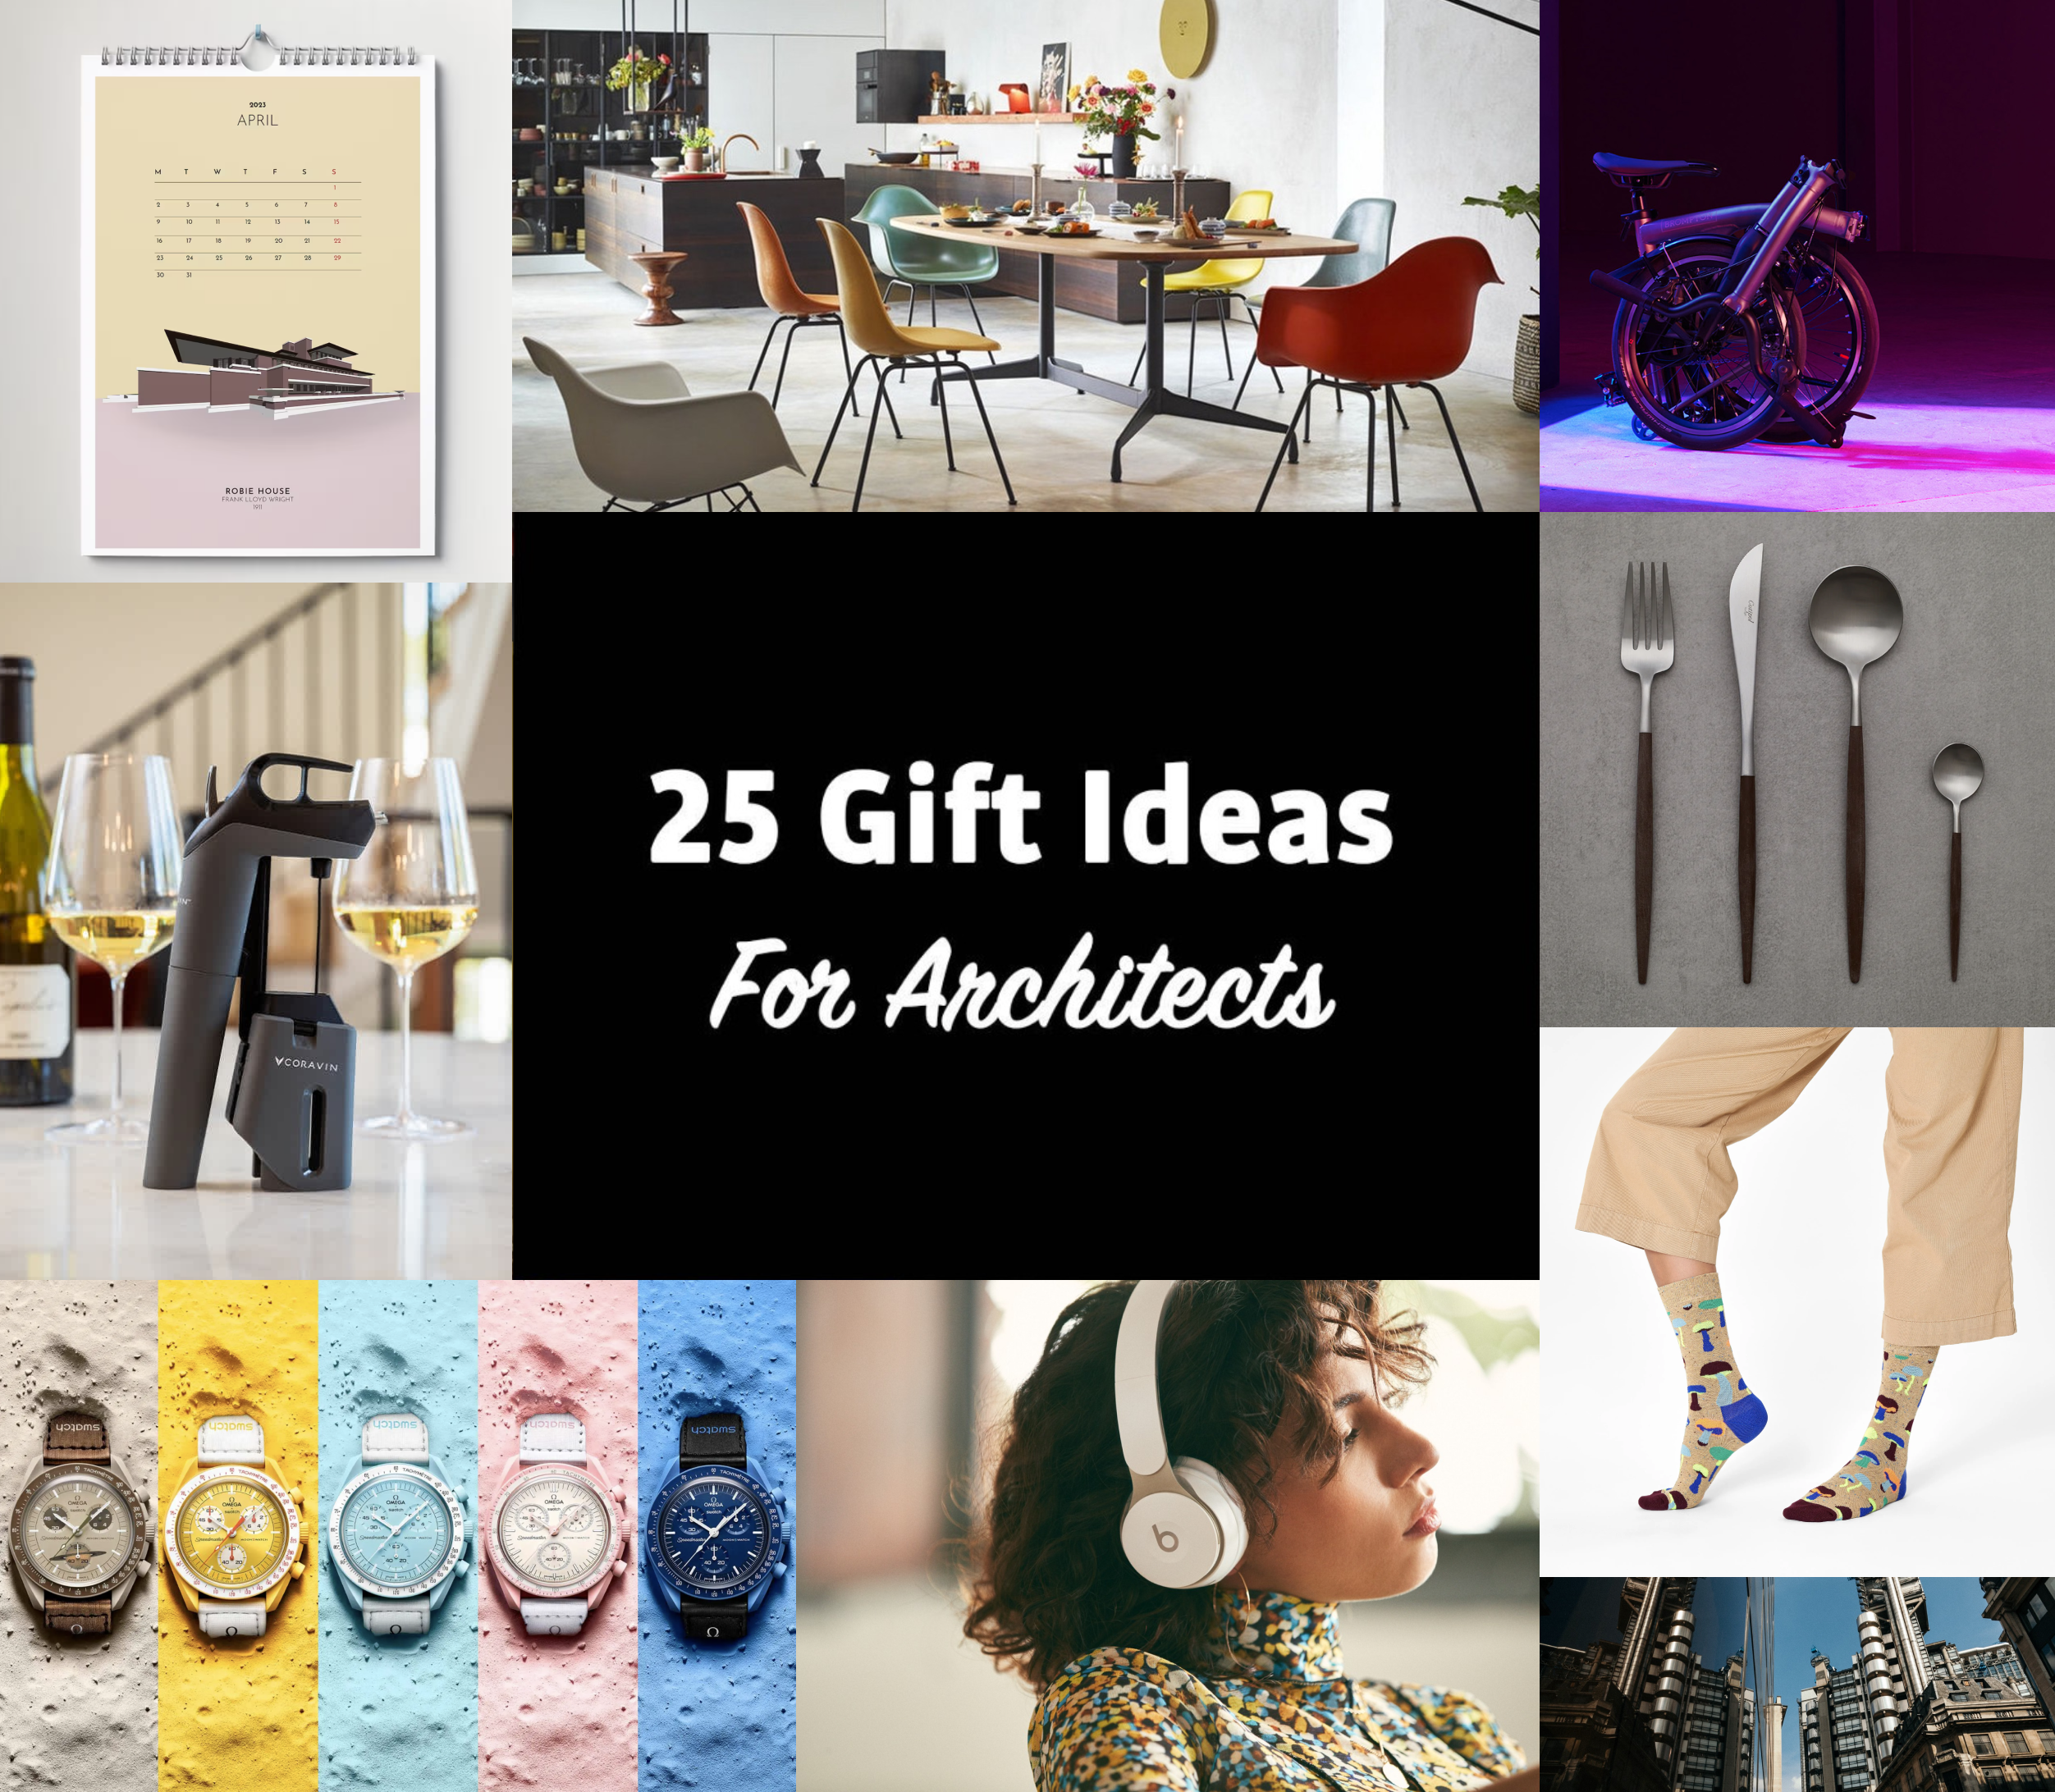 66 Gift Ideas for Men in 2022